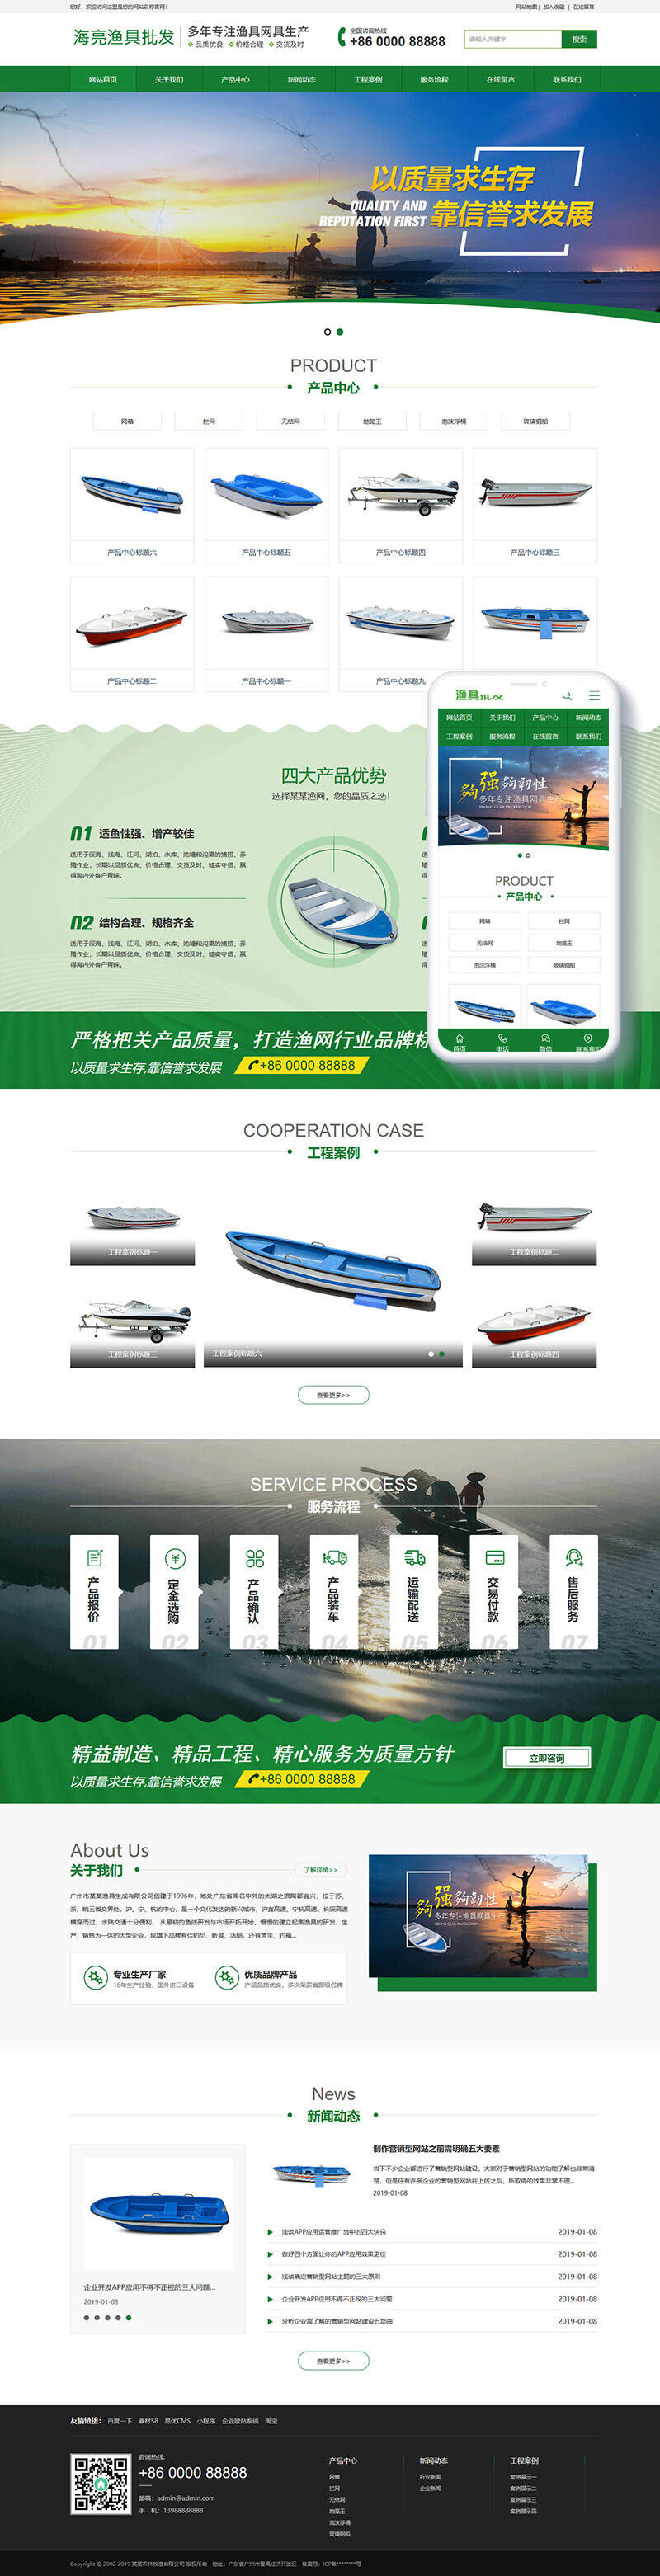 织梦dedecms渔具批发农林牧渔企业网站模板(带手机移动端)